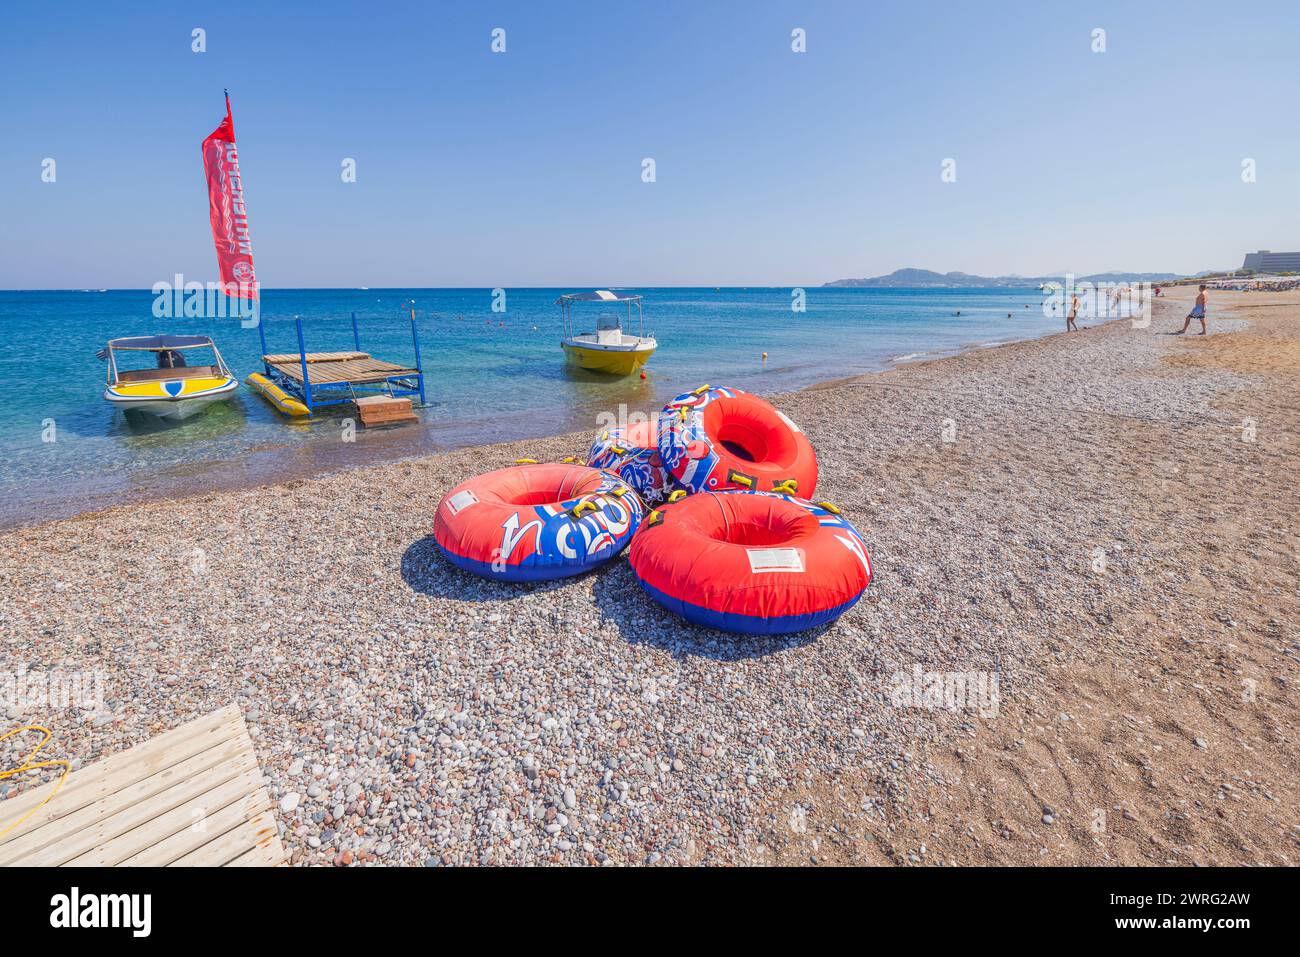 Blick auf rote aufblasbare Ringe, die begeisterte Gäste zu einer aufregenden Fahrt mit einem Motorboot einladen. Rhodos, Griechenland. Stockfoto